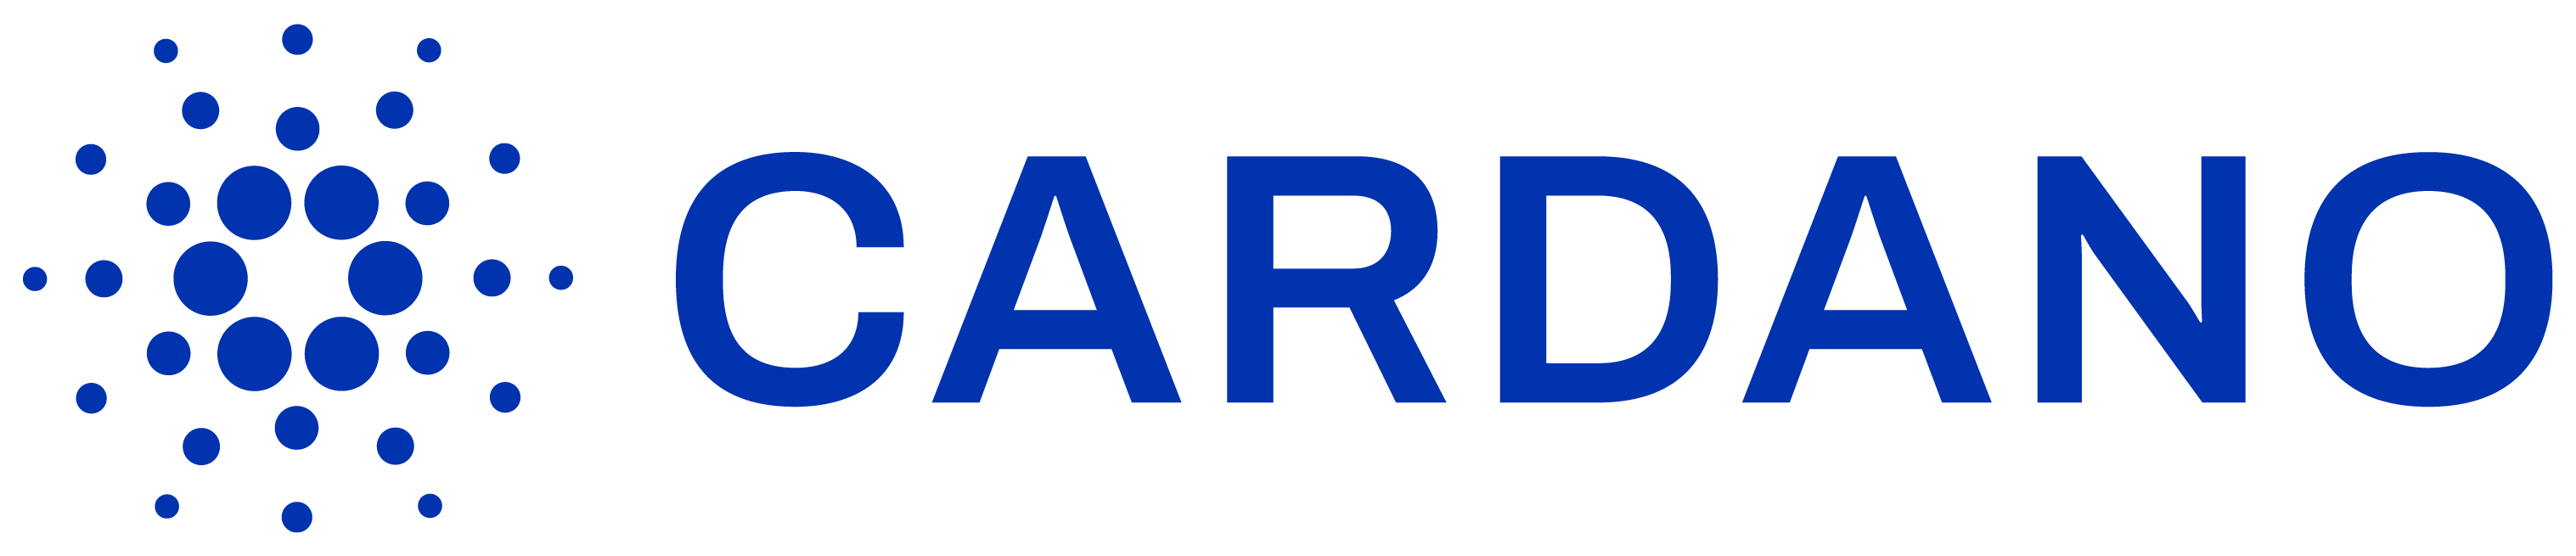 Cardano logo colors